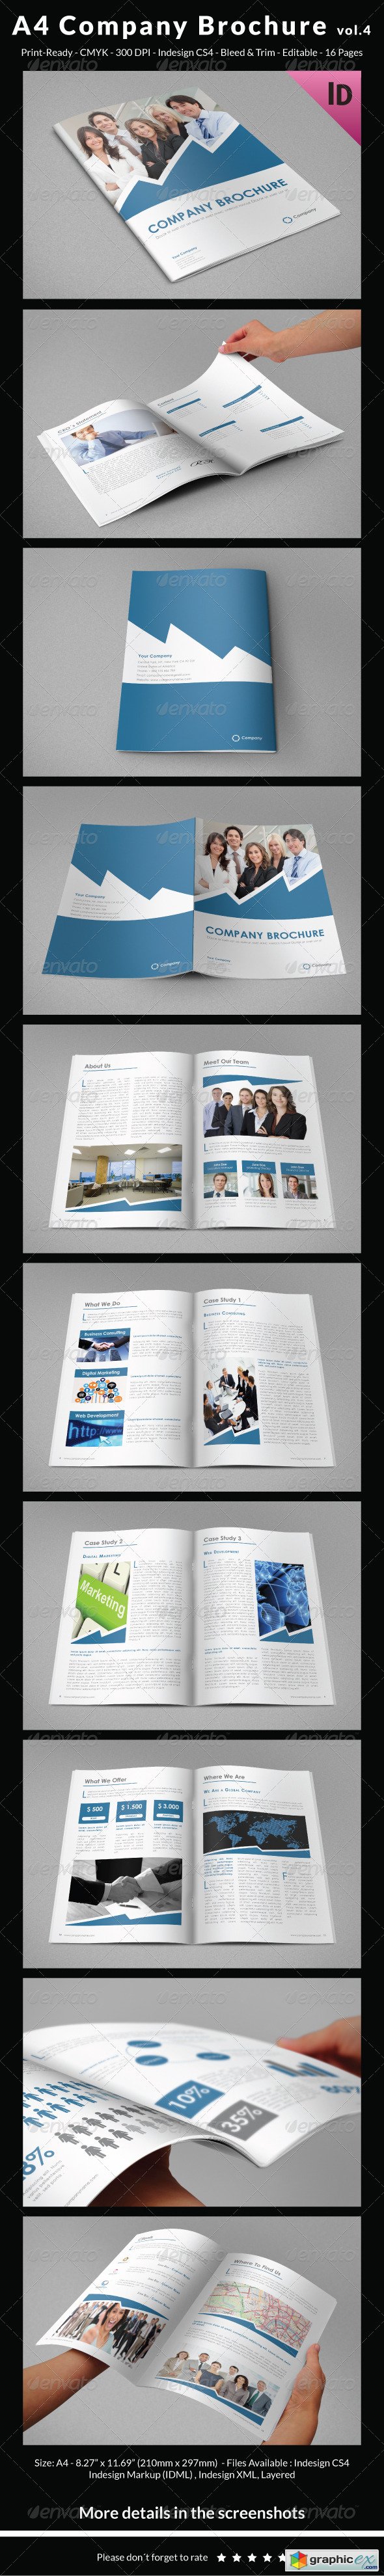 A4 Company Brochure vol4